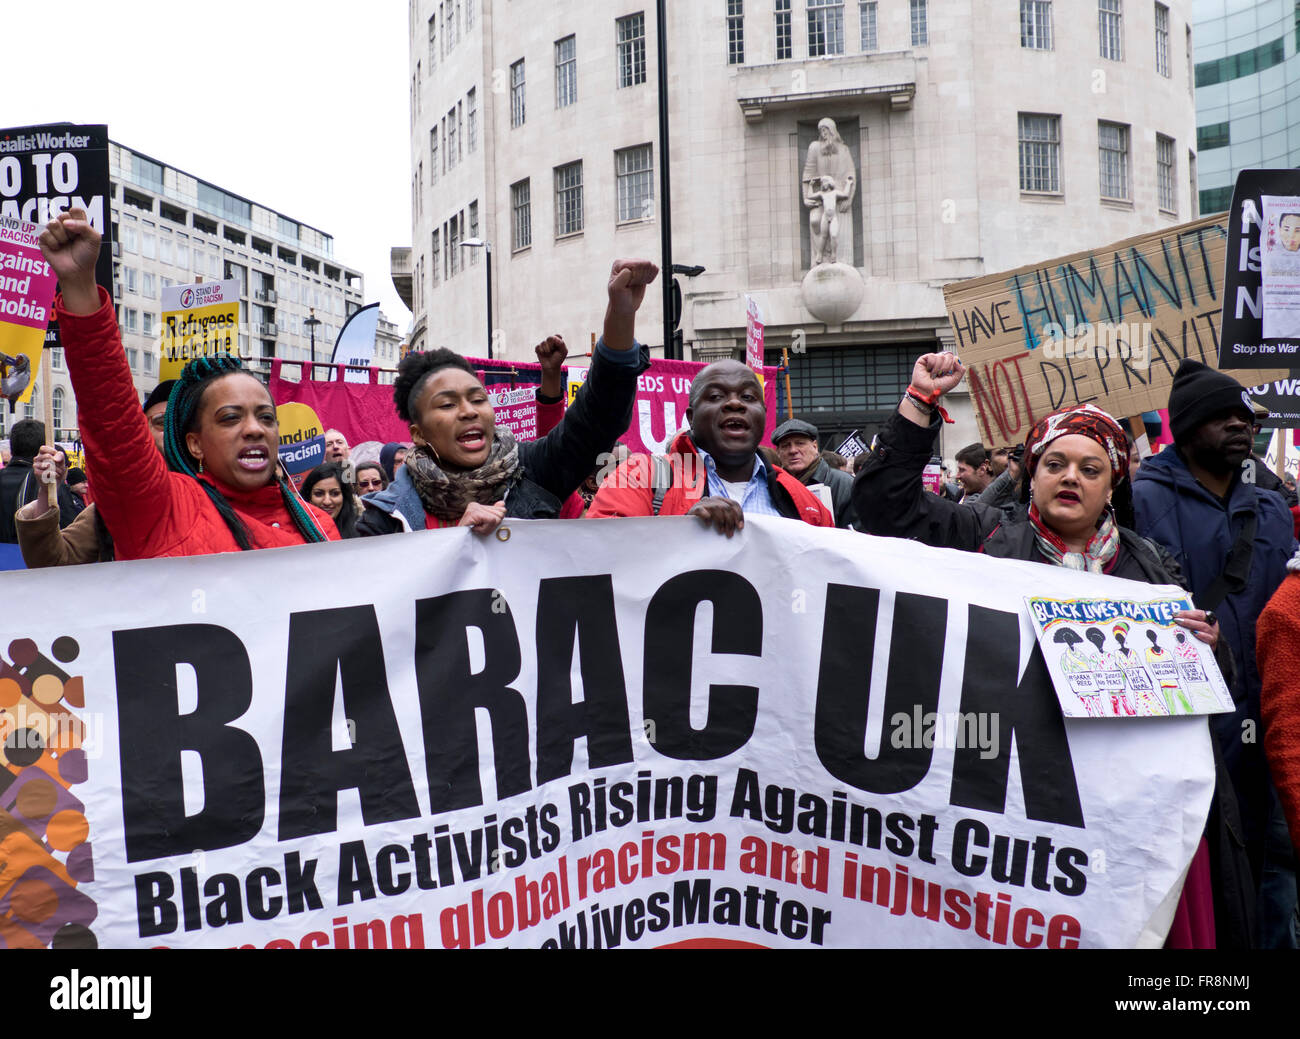 Stand up al racismo marzo acogiendo a los refugiados y protestando contra la islamofobia y los prejuicios raciales, Londres 2016 Foto de stock